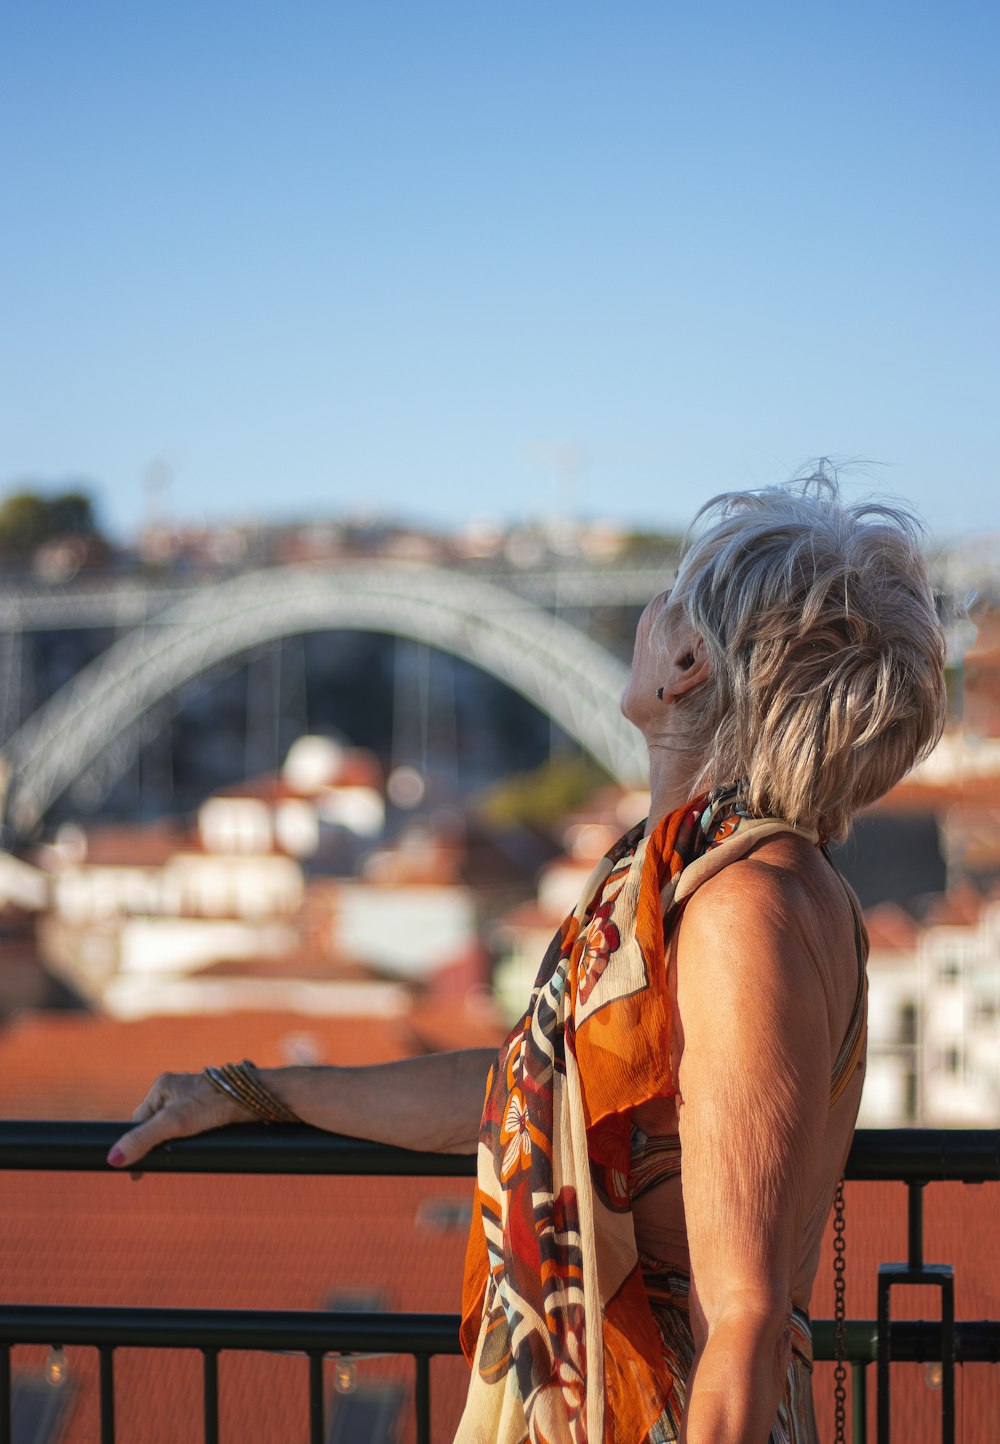 une femme debout sur un balcon avec vue sur un pont